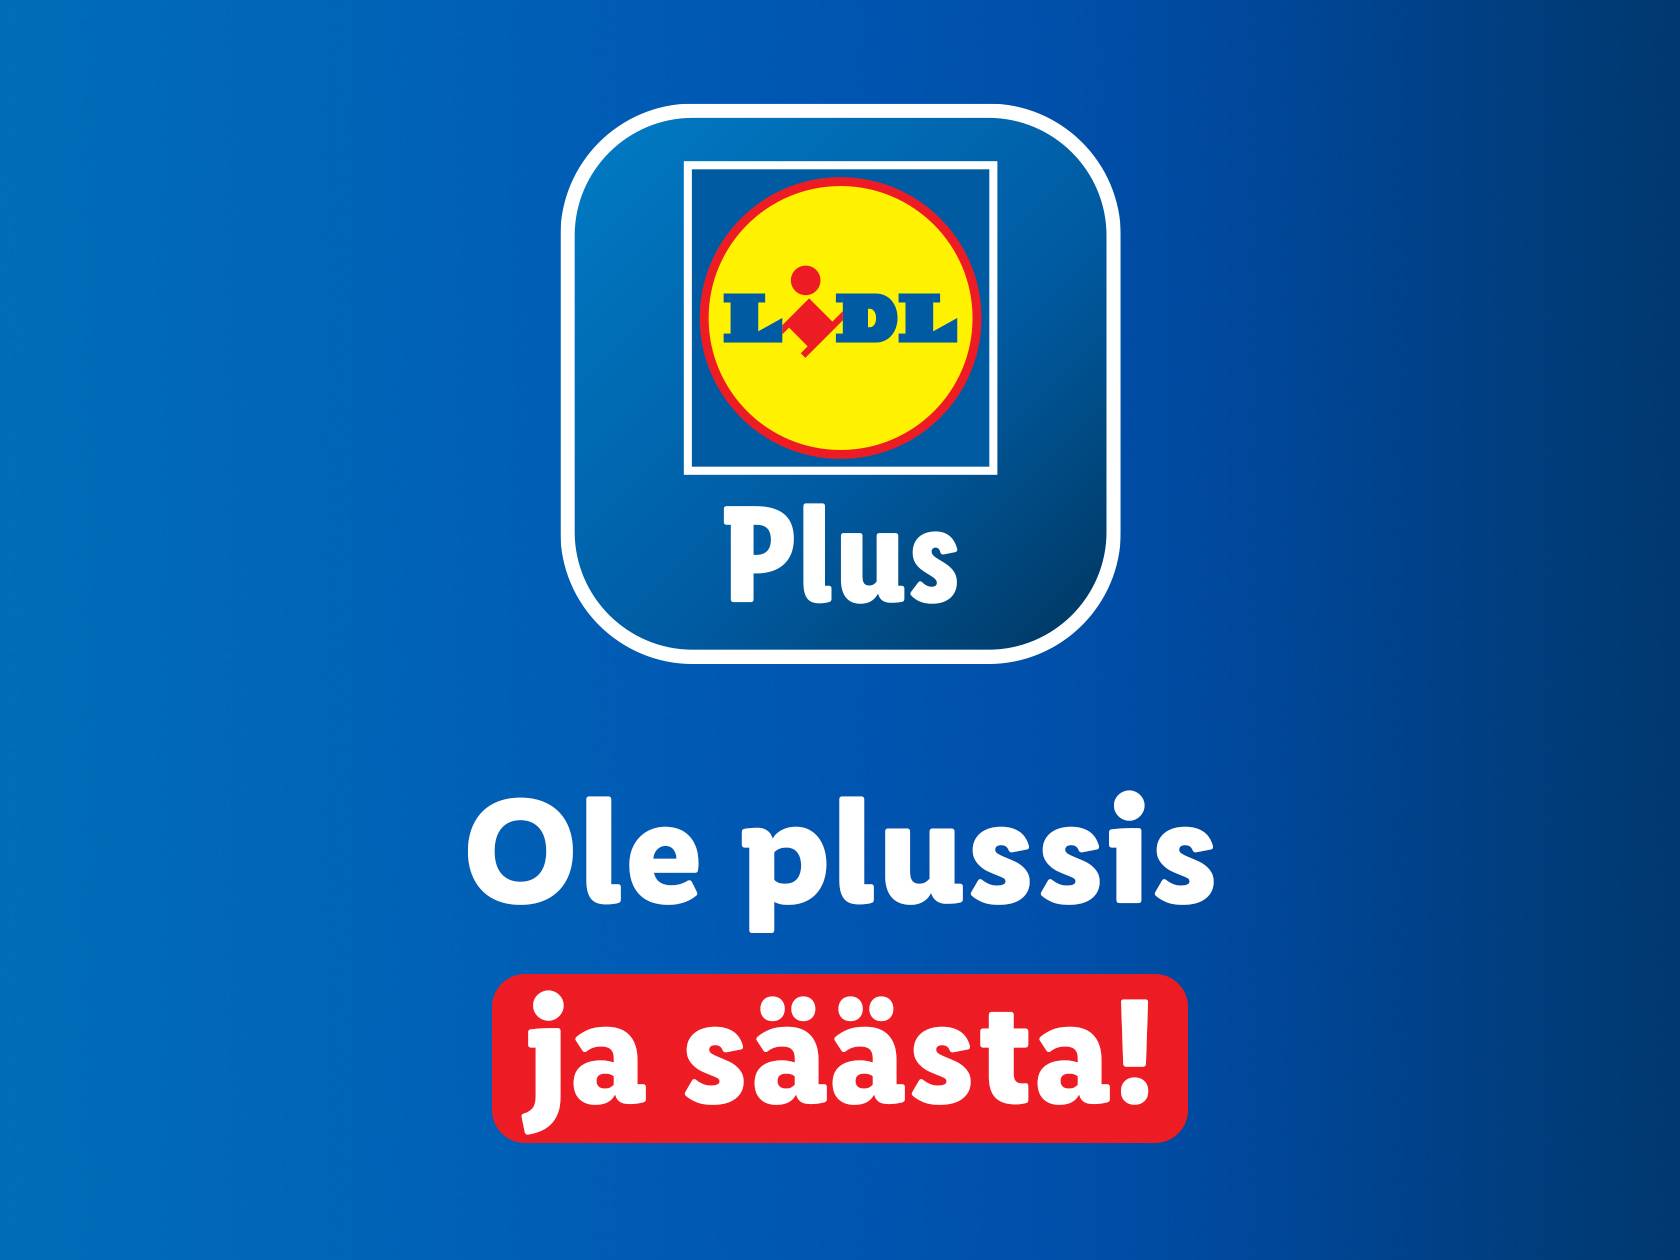 Lidl Plus